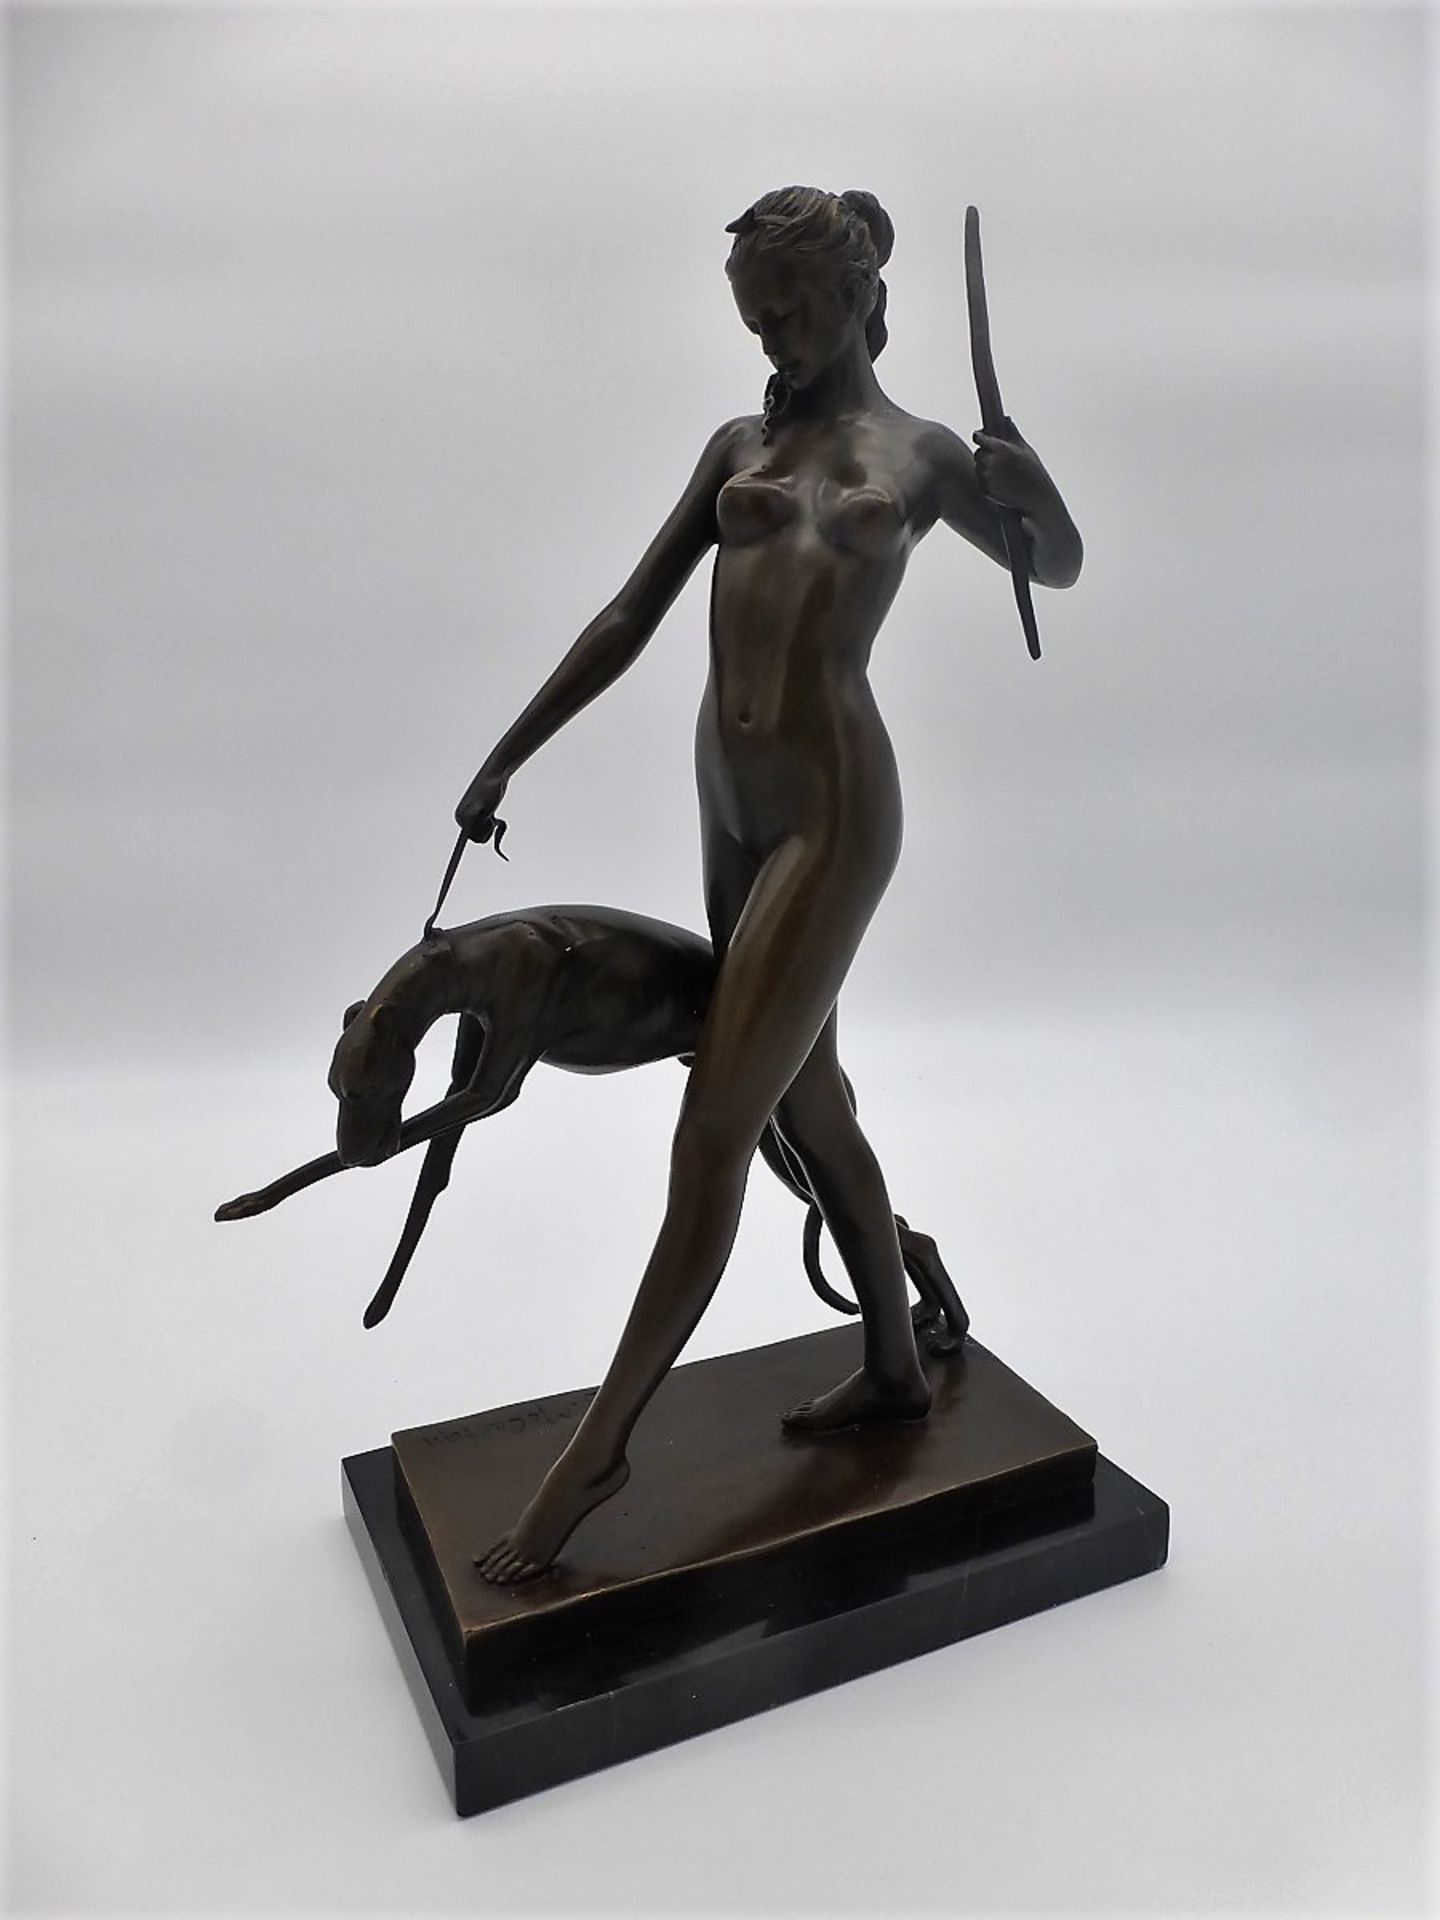 Bronzeskulptur "Diana" / McCartan